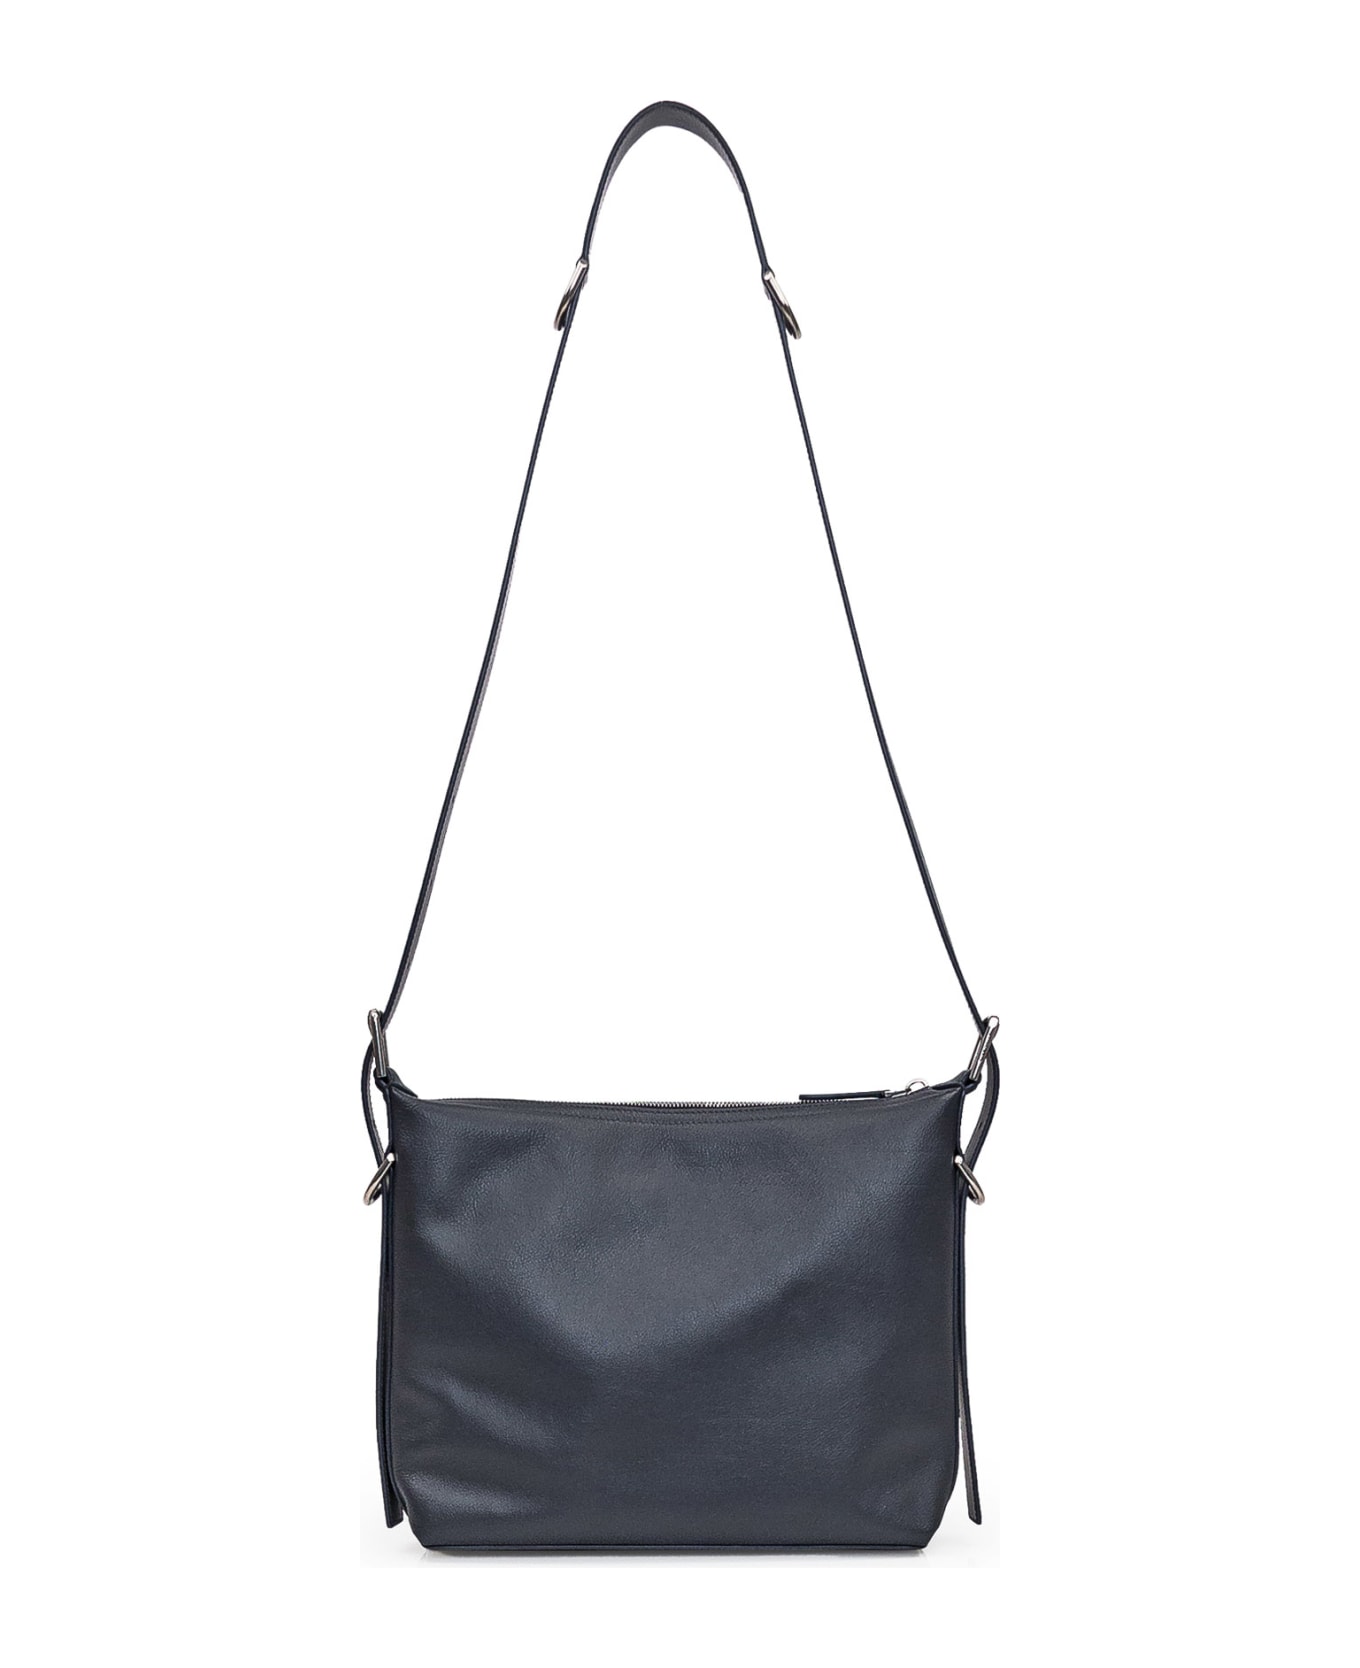 Givenchy Voyou Bag - DARK GREY ショルダーバッグ